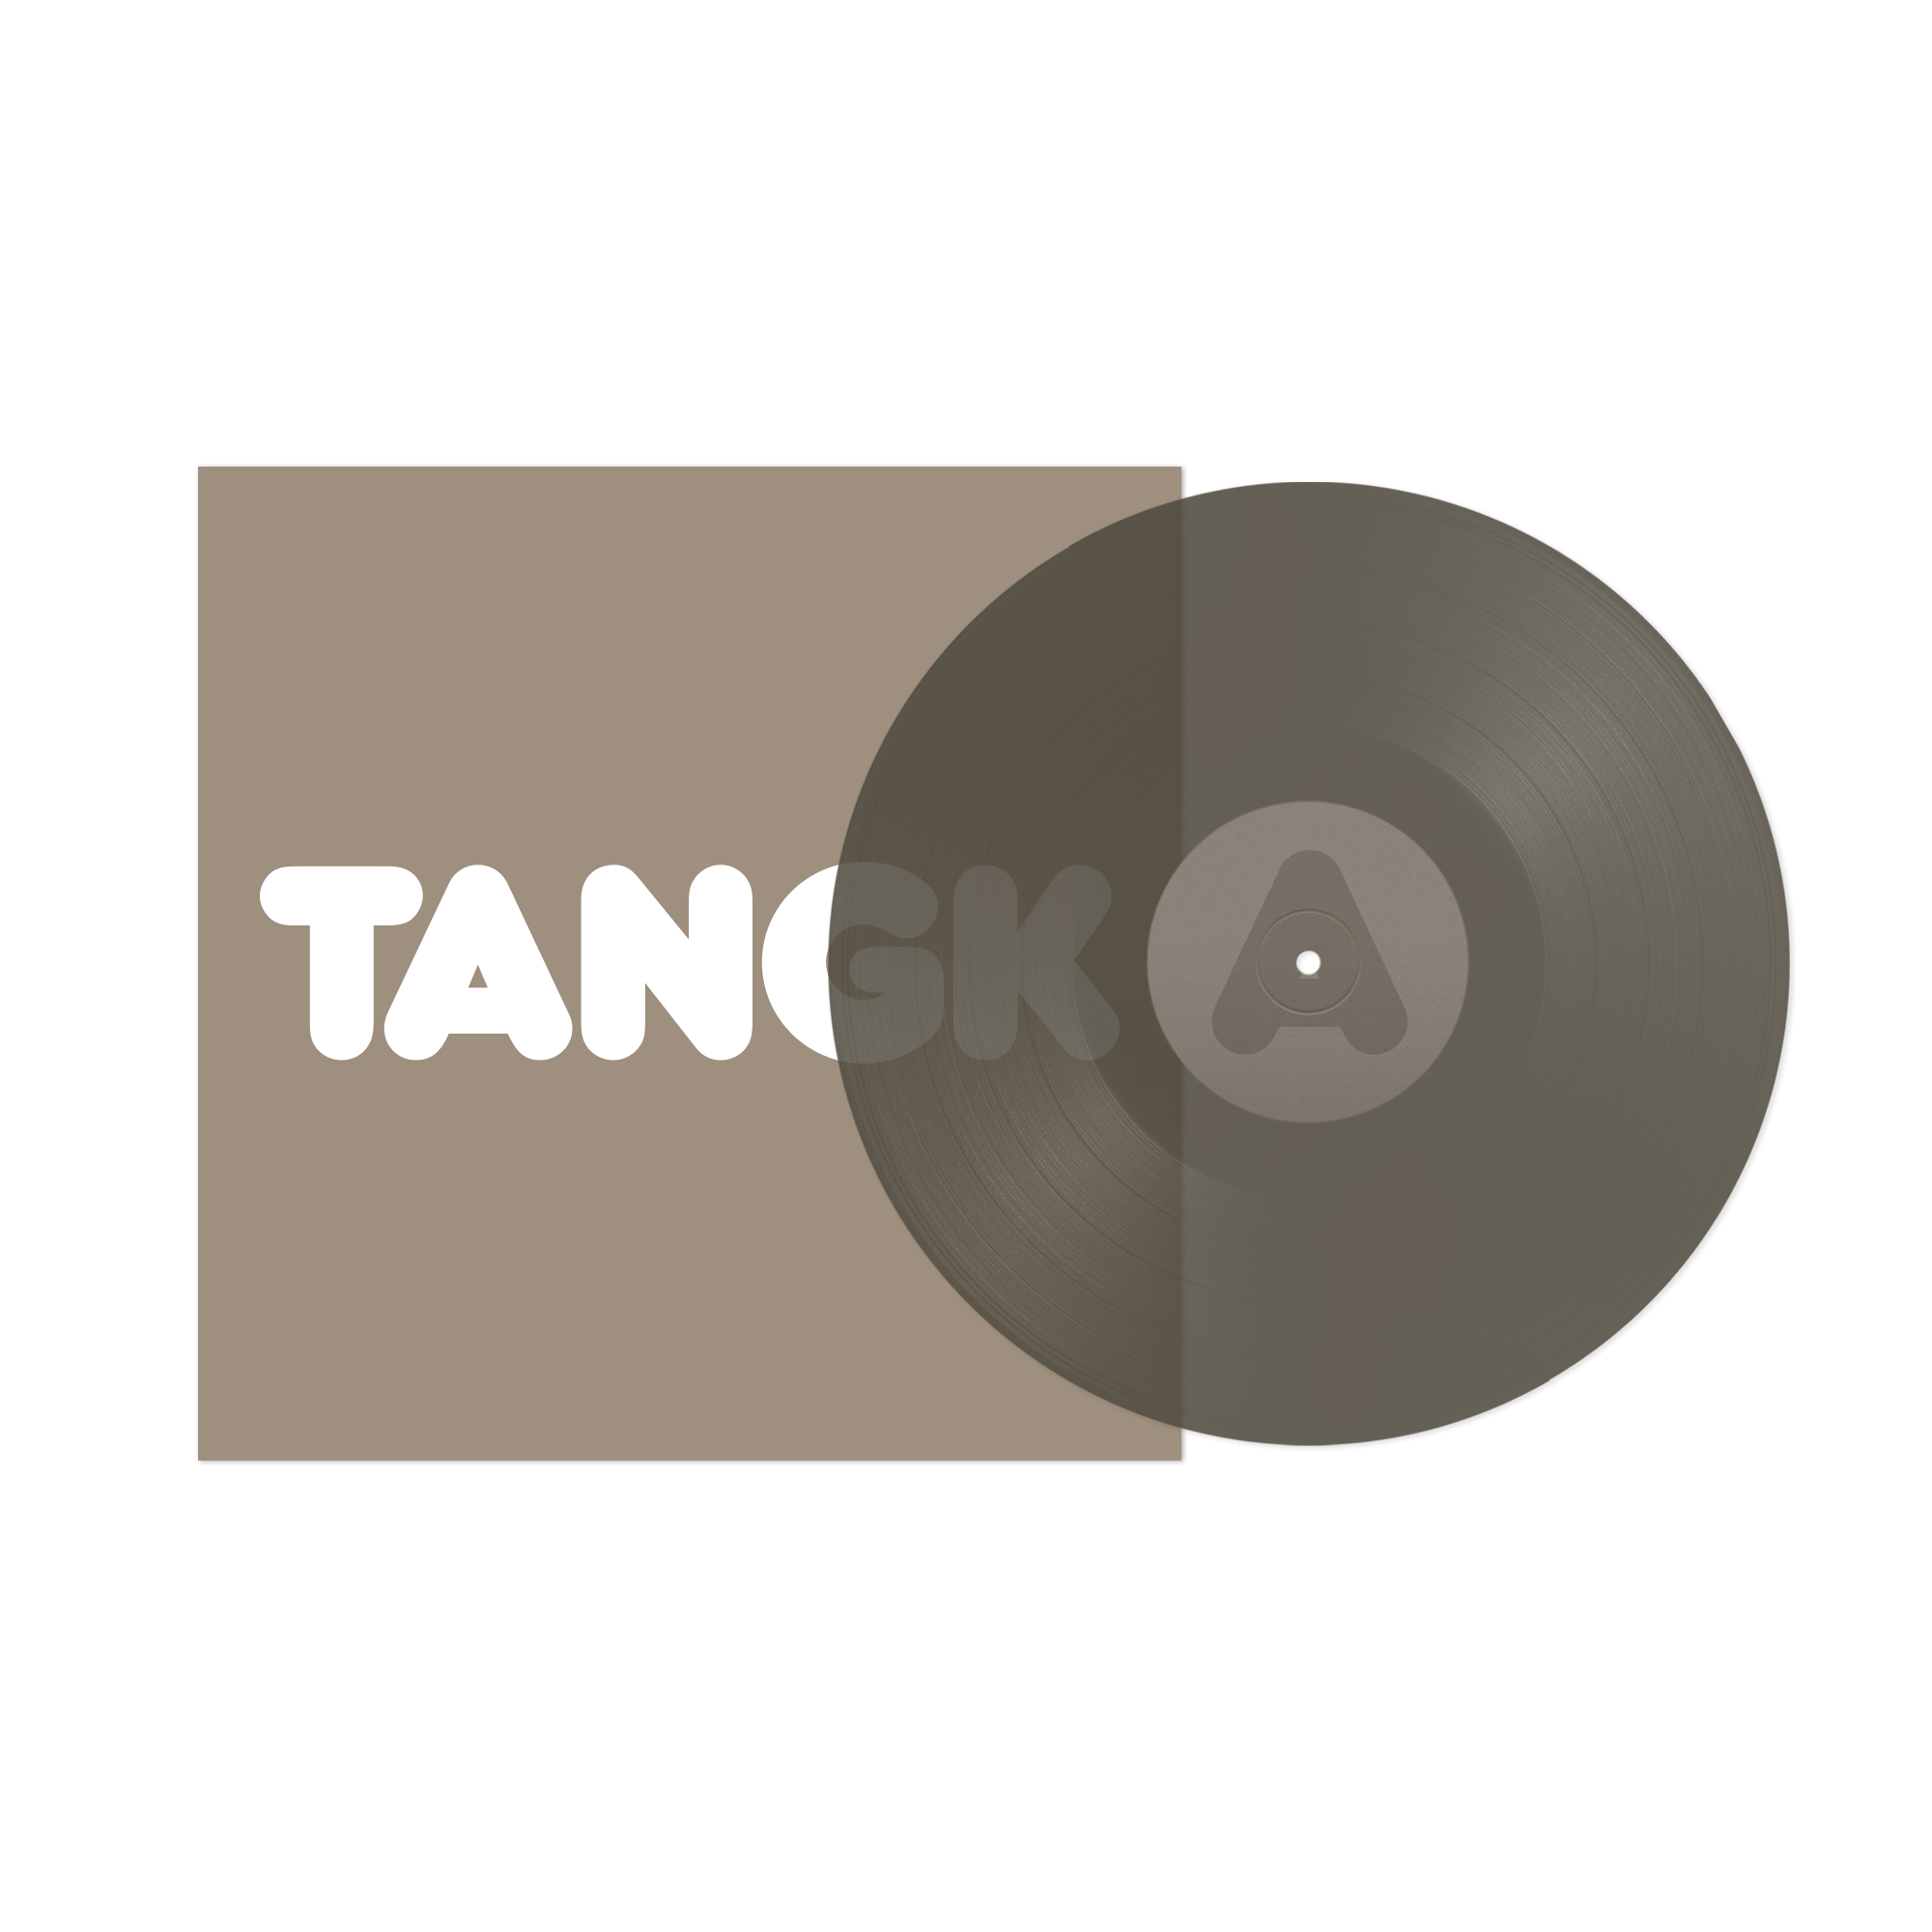 TANGK (Limited Edition Collector’s D2C Exclusive PVC LP) + T-Shirt Bundle